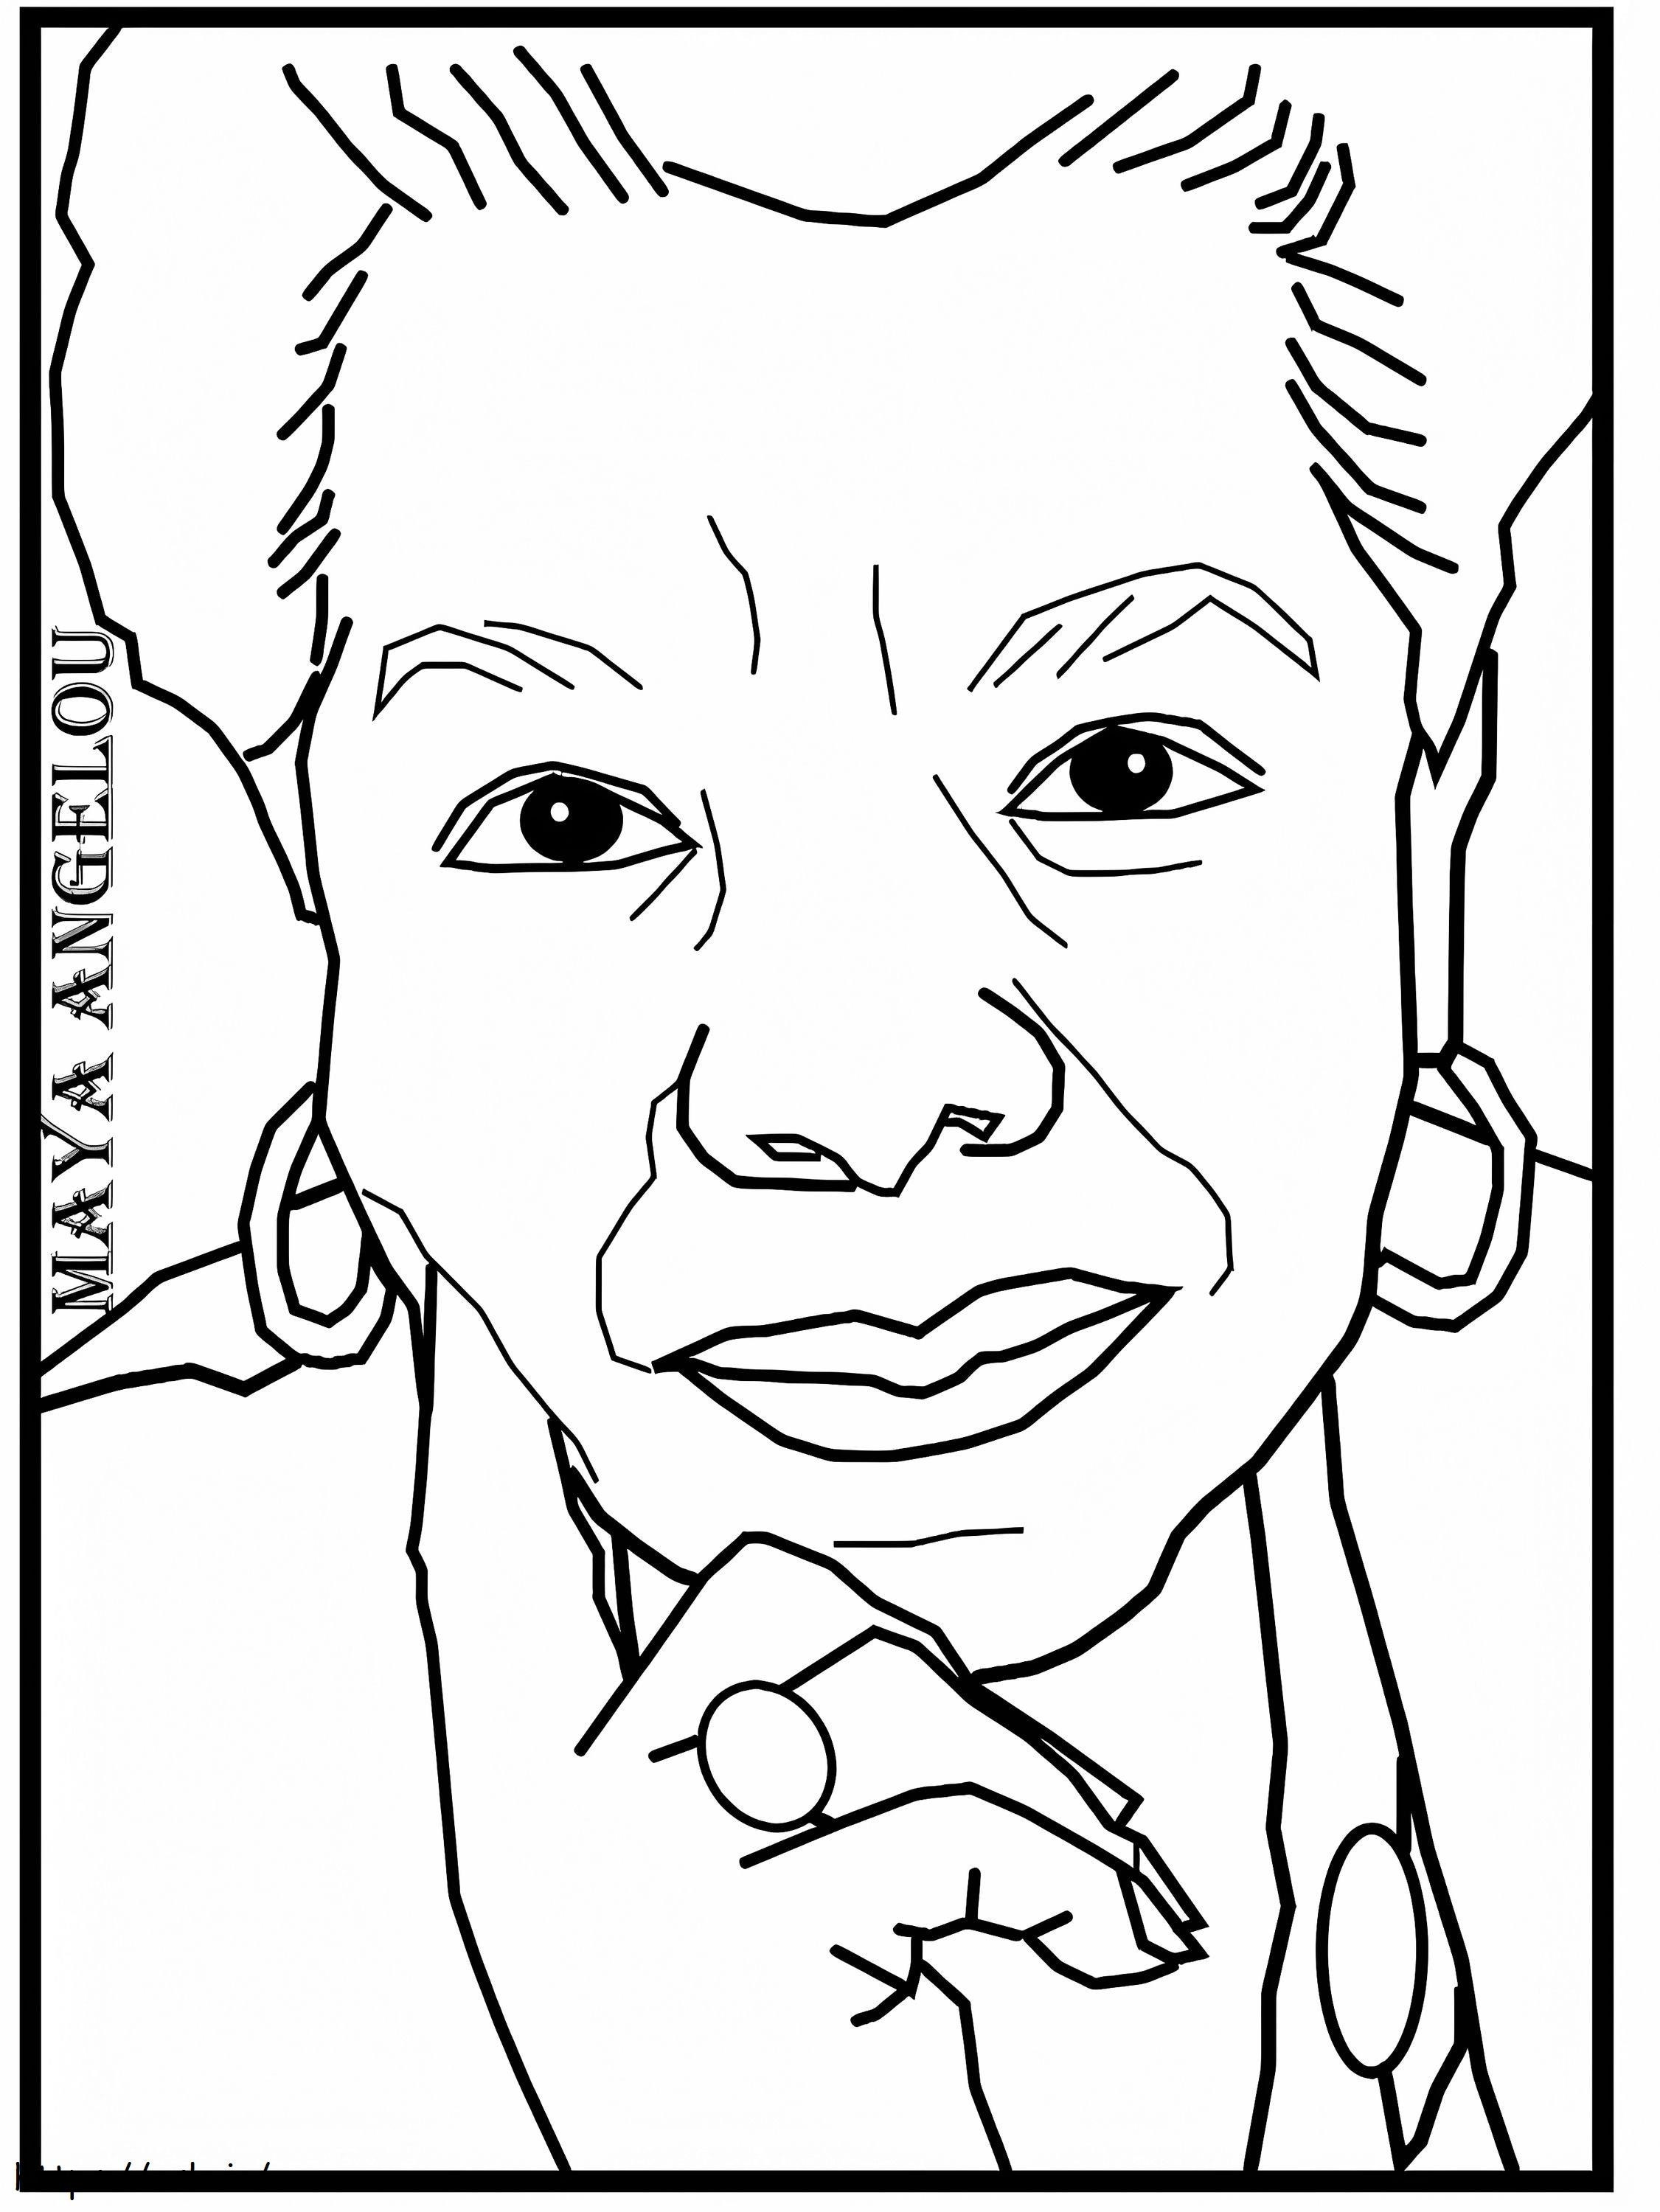 Maya Angelou 1 ausmalbilder